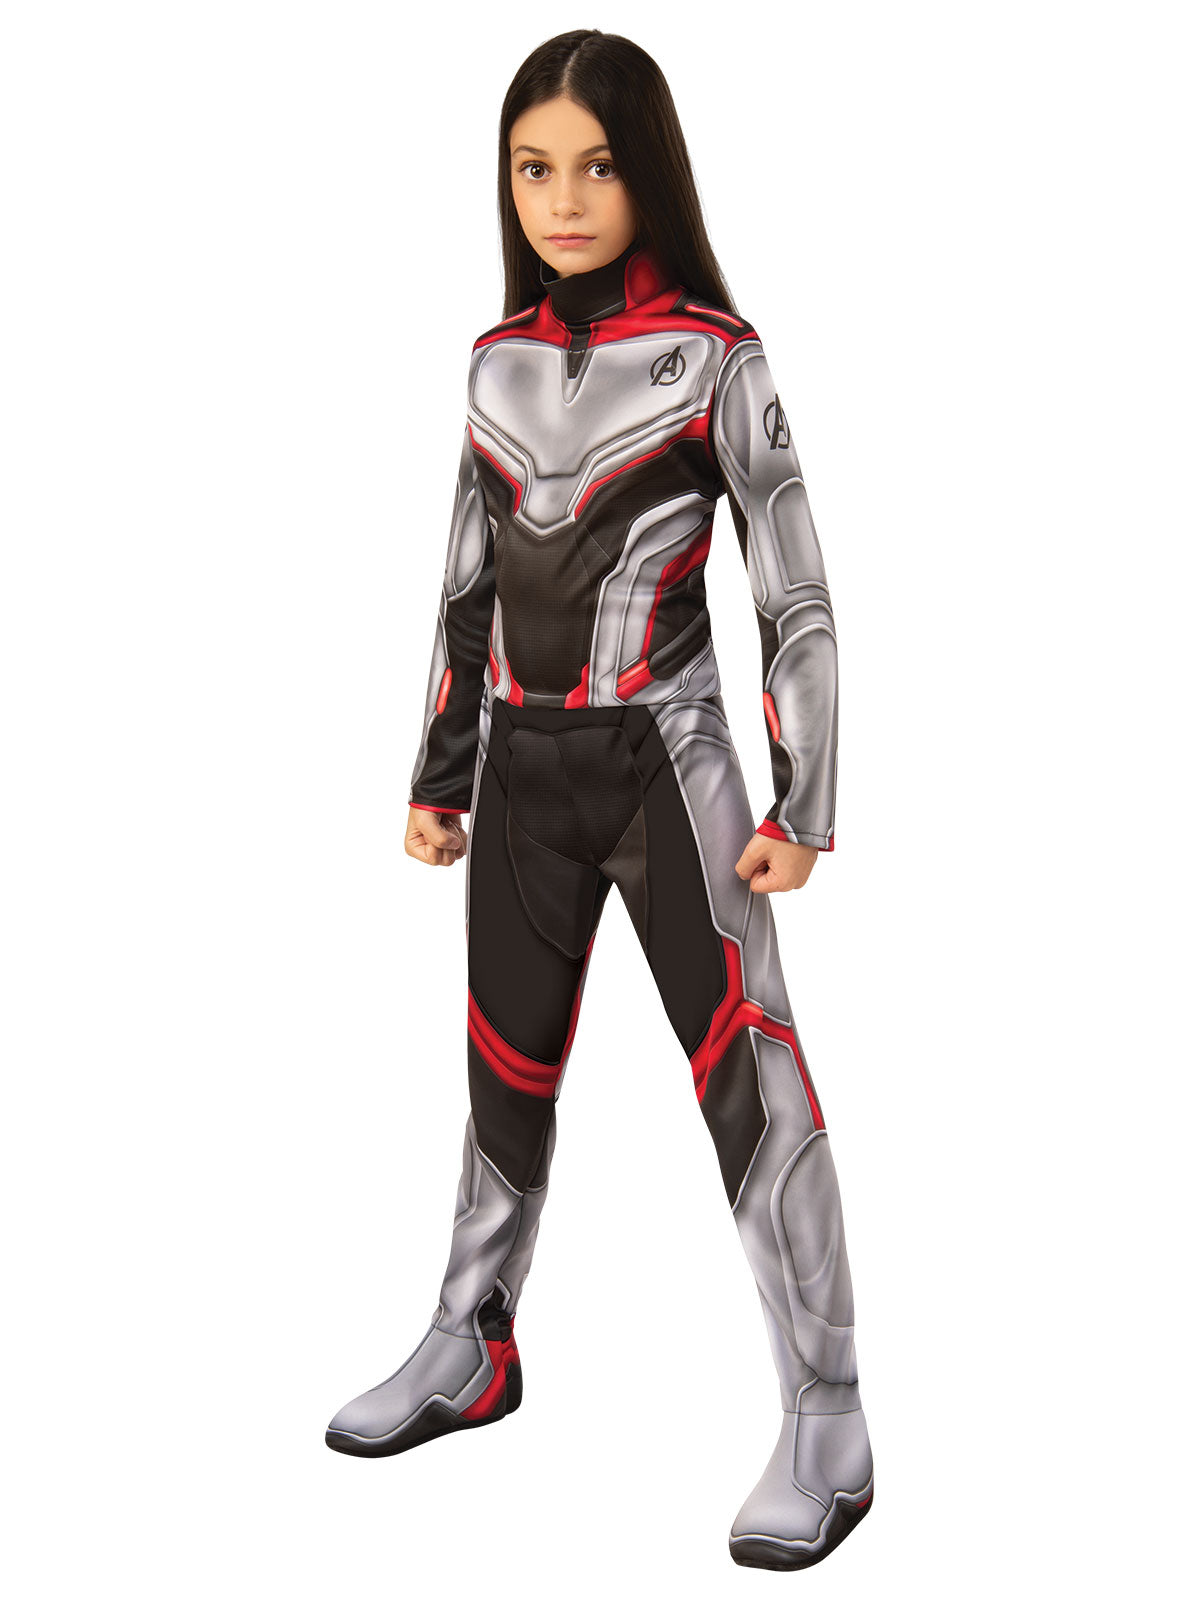 Avengers 4 Classic Unisex Team Child Costume Suit Licensed